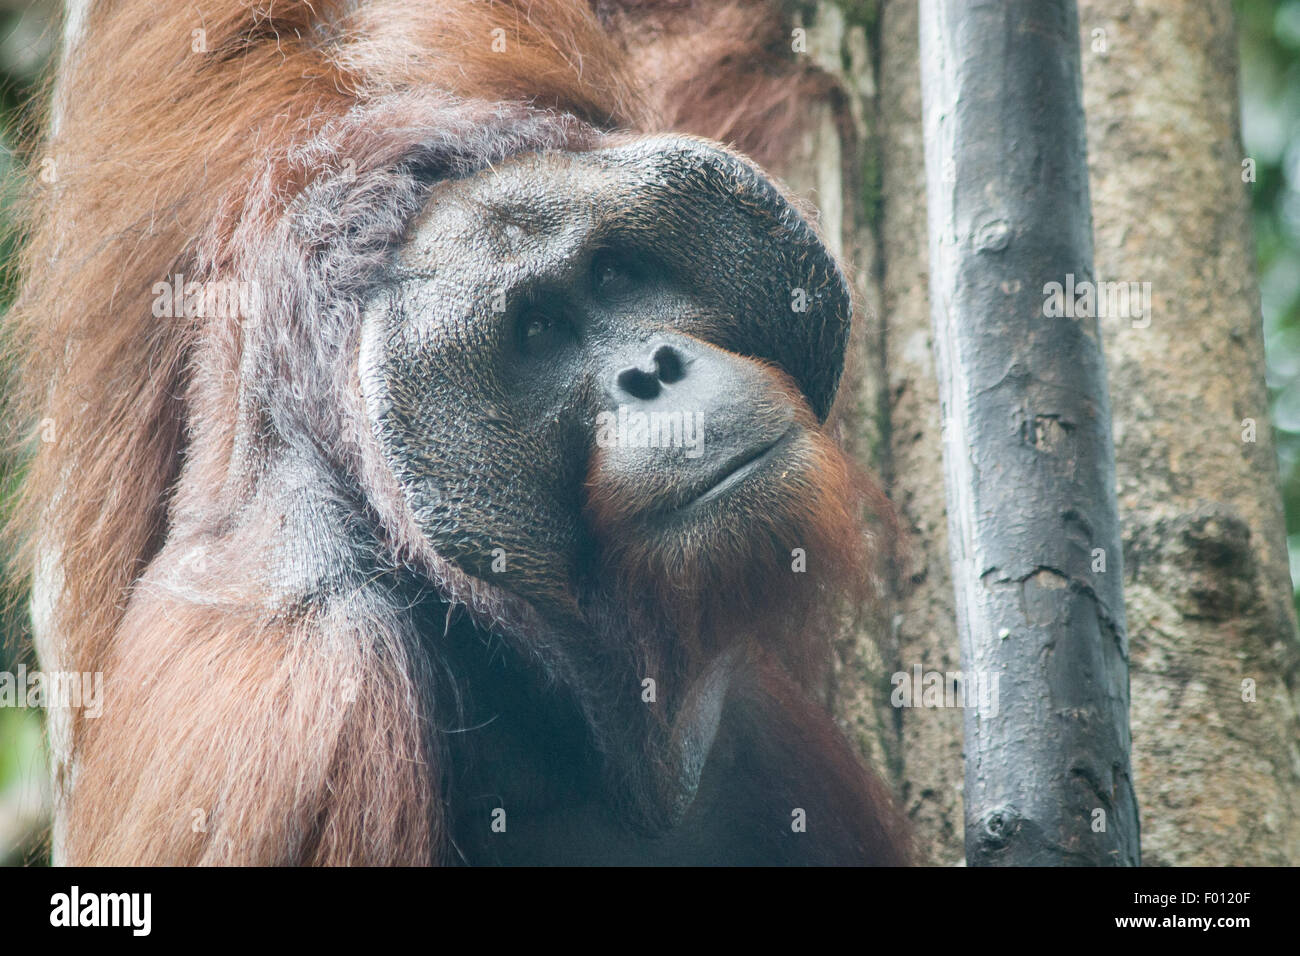 Un grande orangutan maschio con la guancia prominente pastiglie, custodia di gola, e capelli lunghi caratteristica dei maschi dominanti. Foto Stock